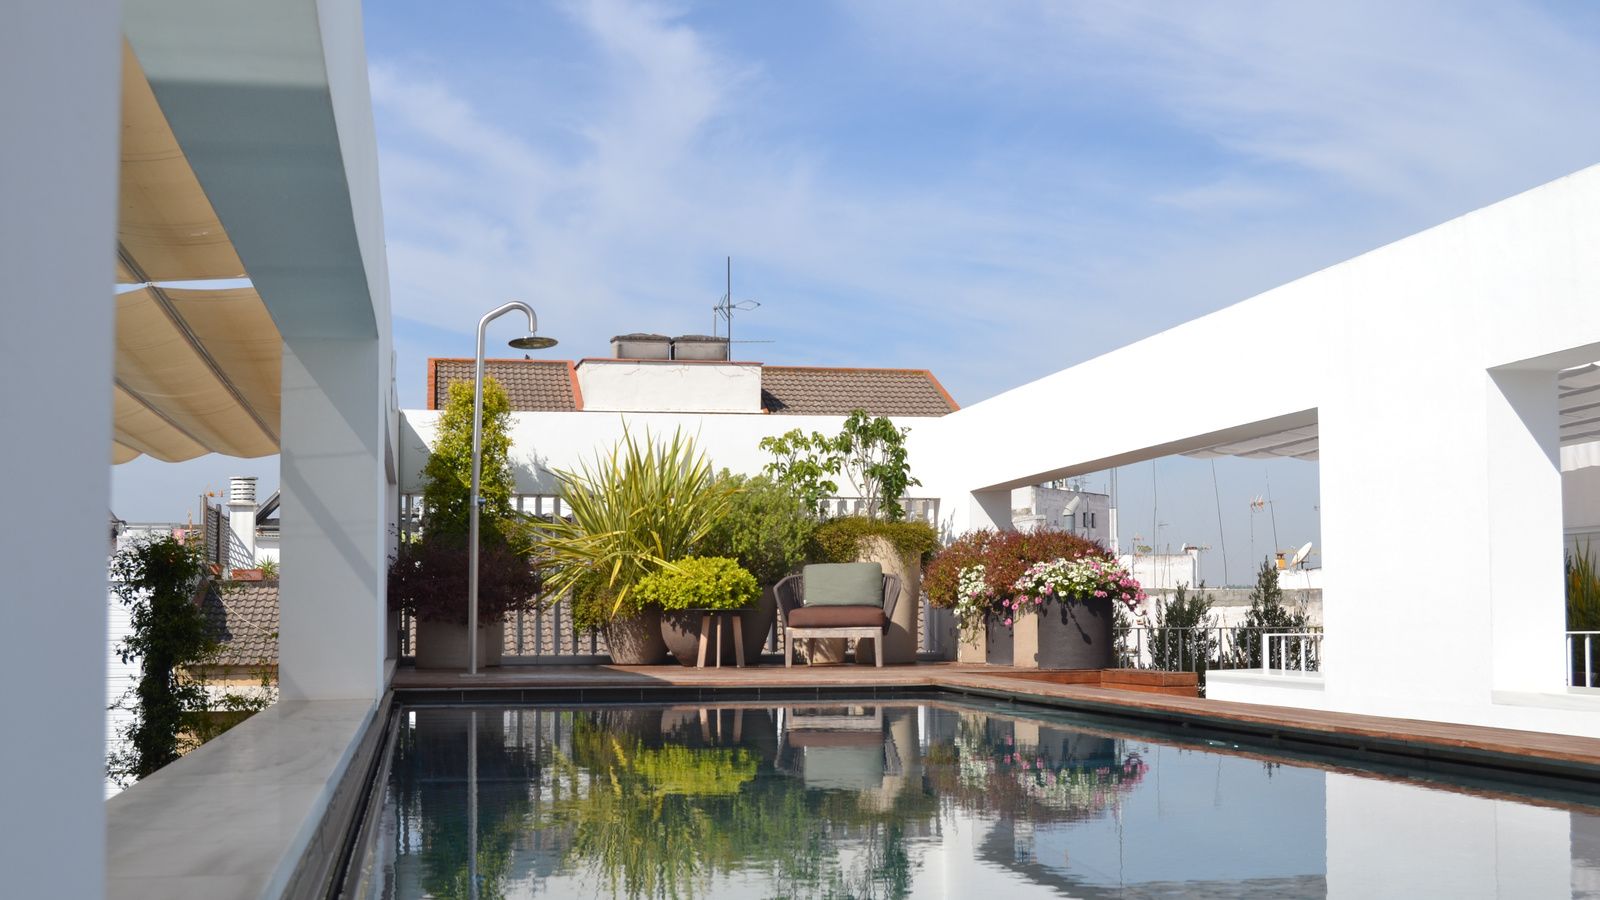 Terraza y piscina del Hotel Mercer Sevilla en el Barrio del Arenal